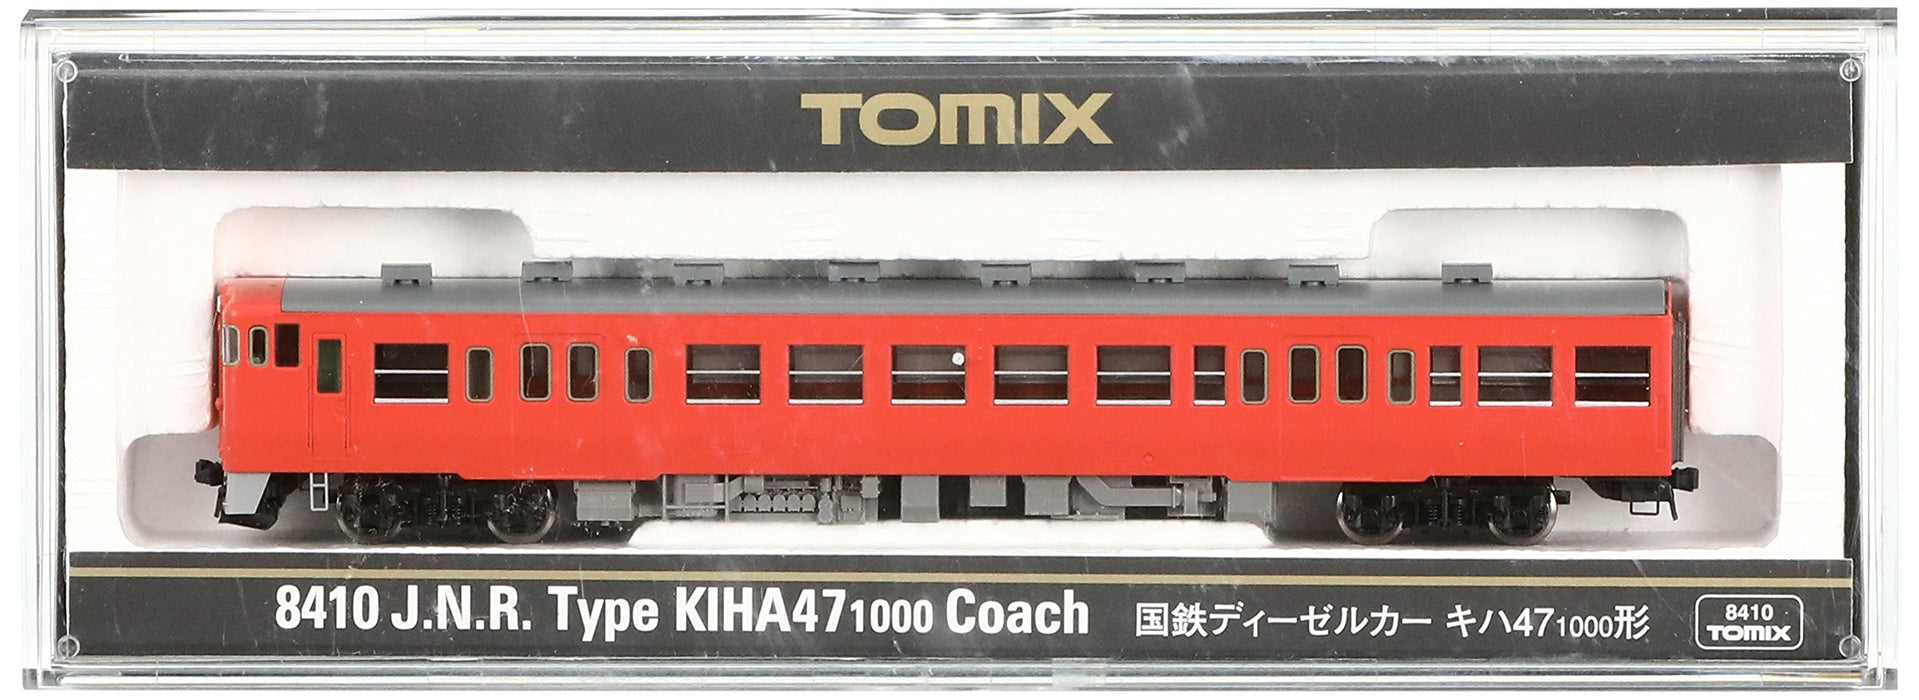 Tomytec Tomix N Gauge Kiha47 1000 Type 8410 Diesel Railway Model Car